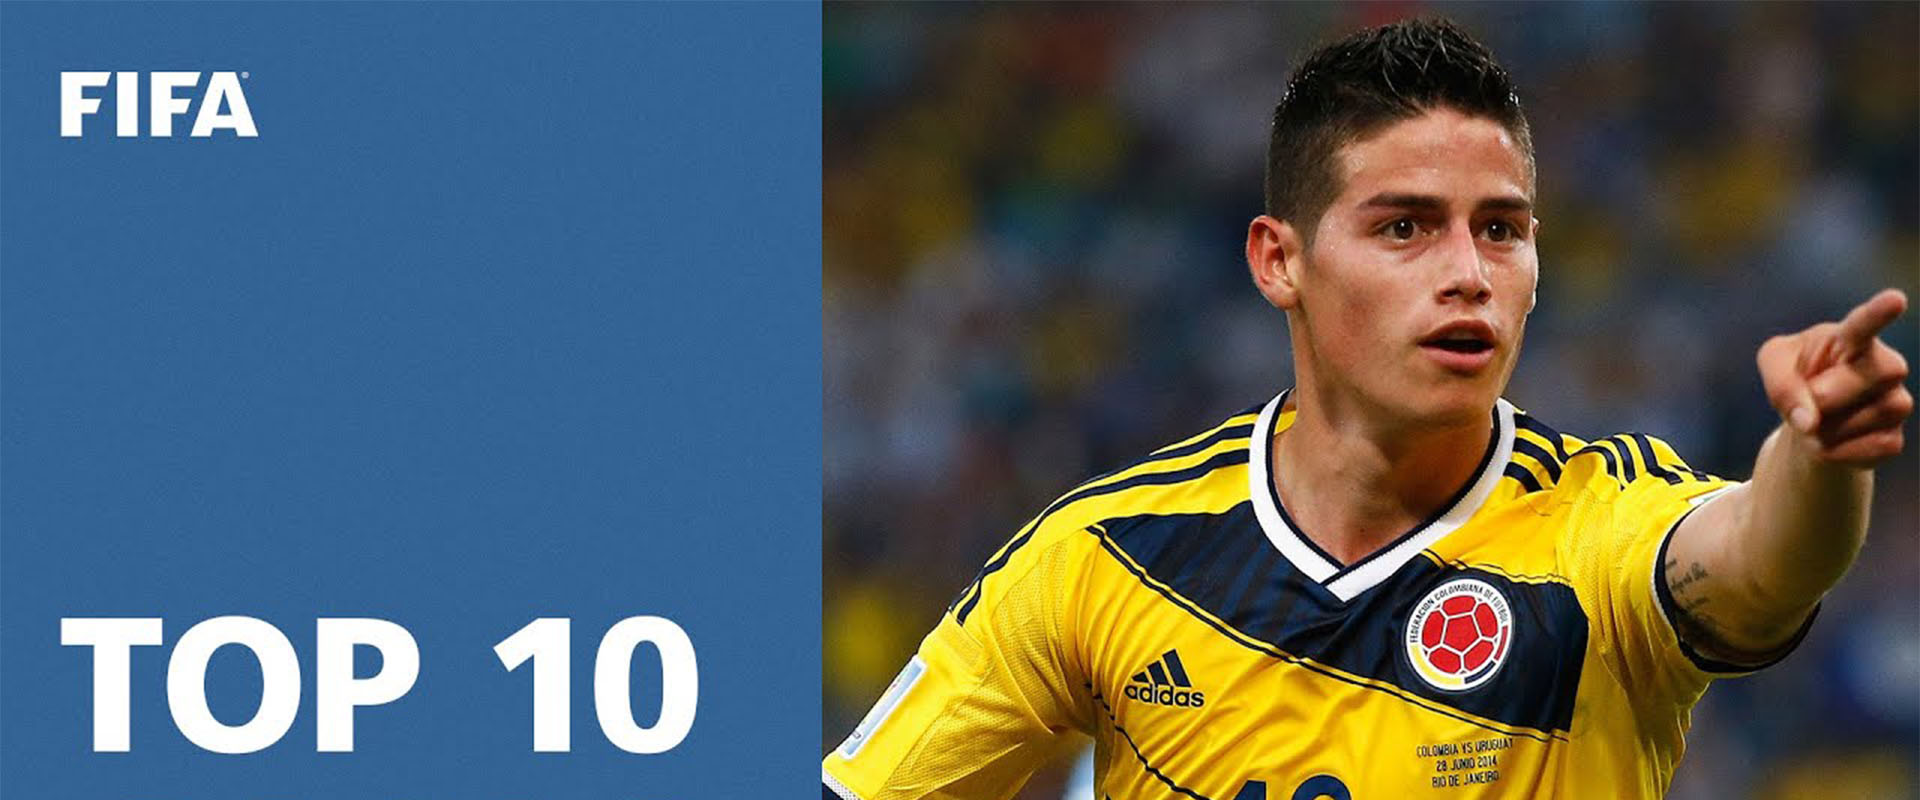 TOP 10 GOALS | 2014 FIFA World Cup Brazil